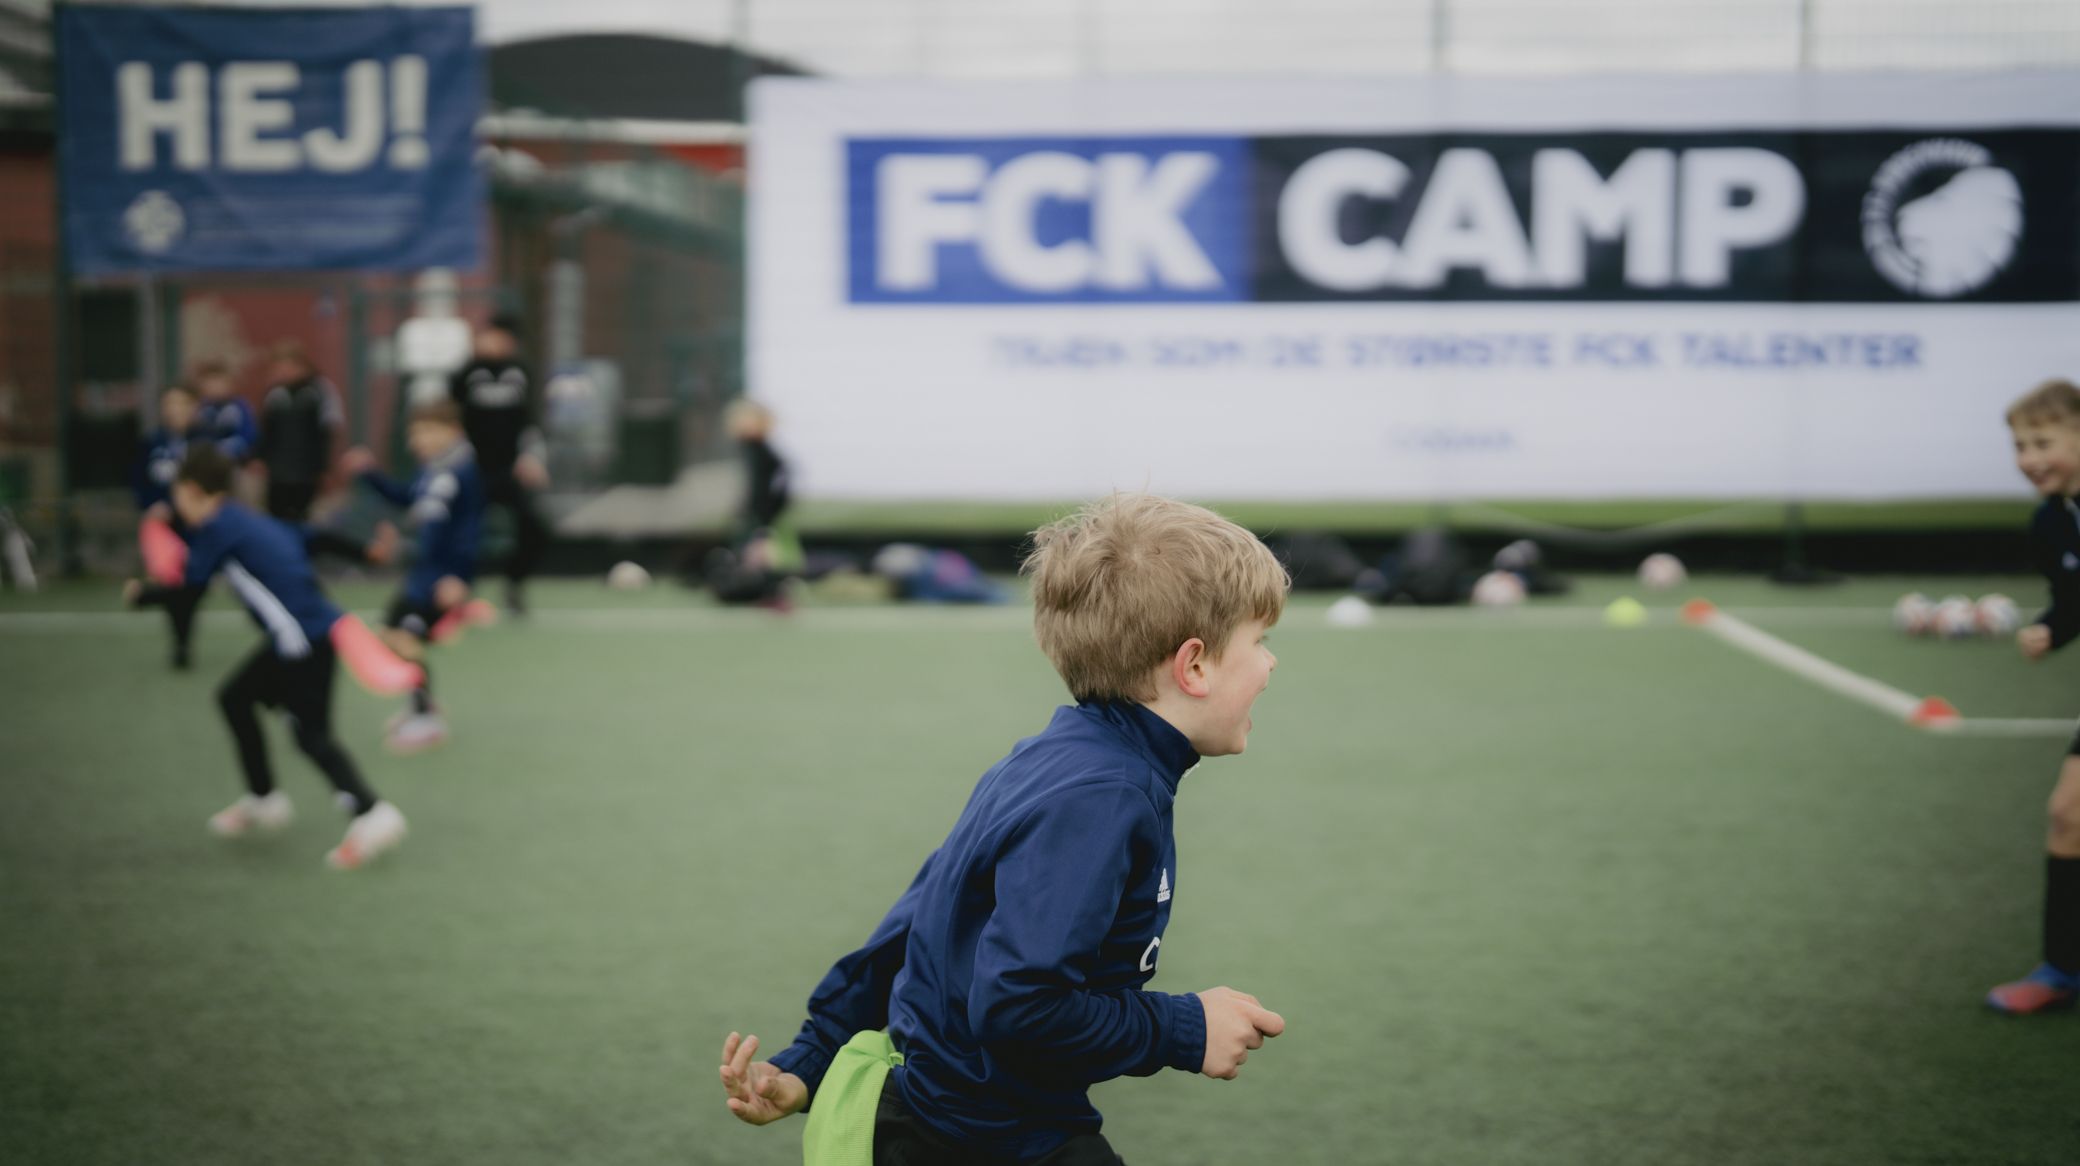 FCK Camp